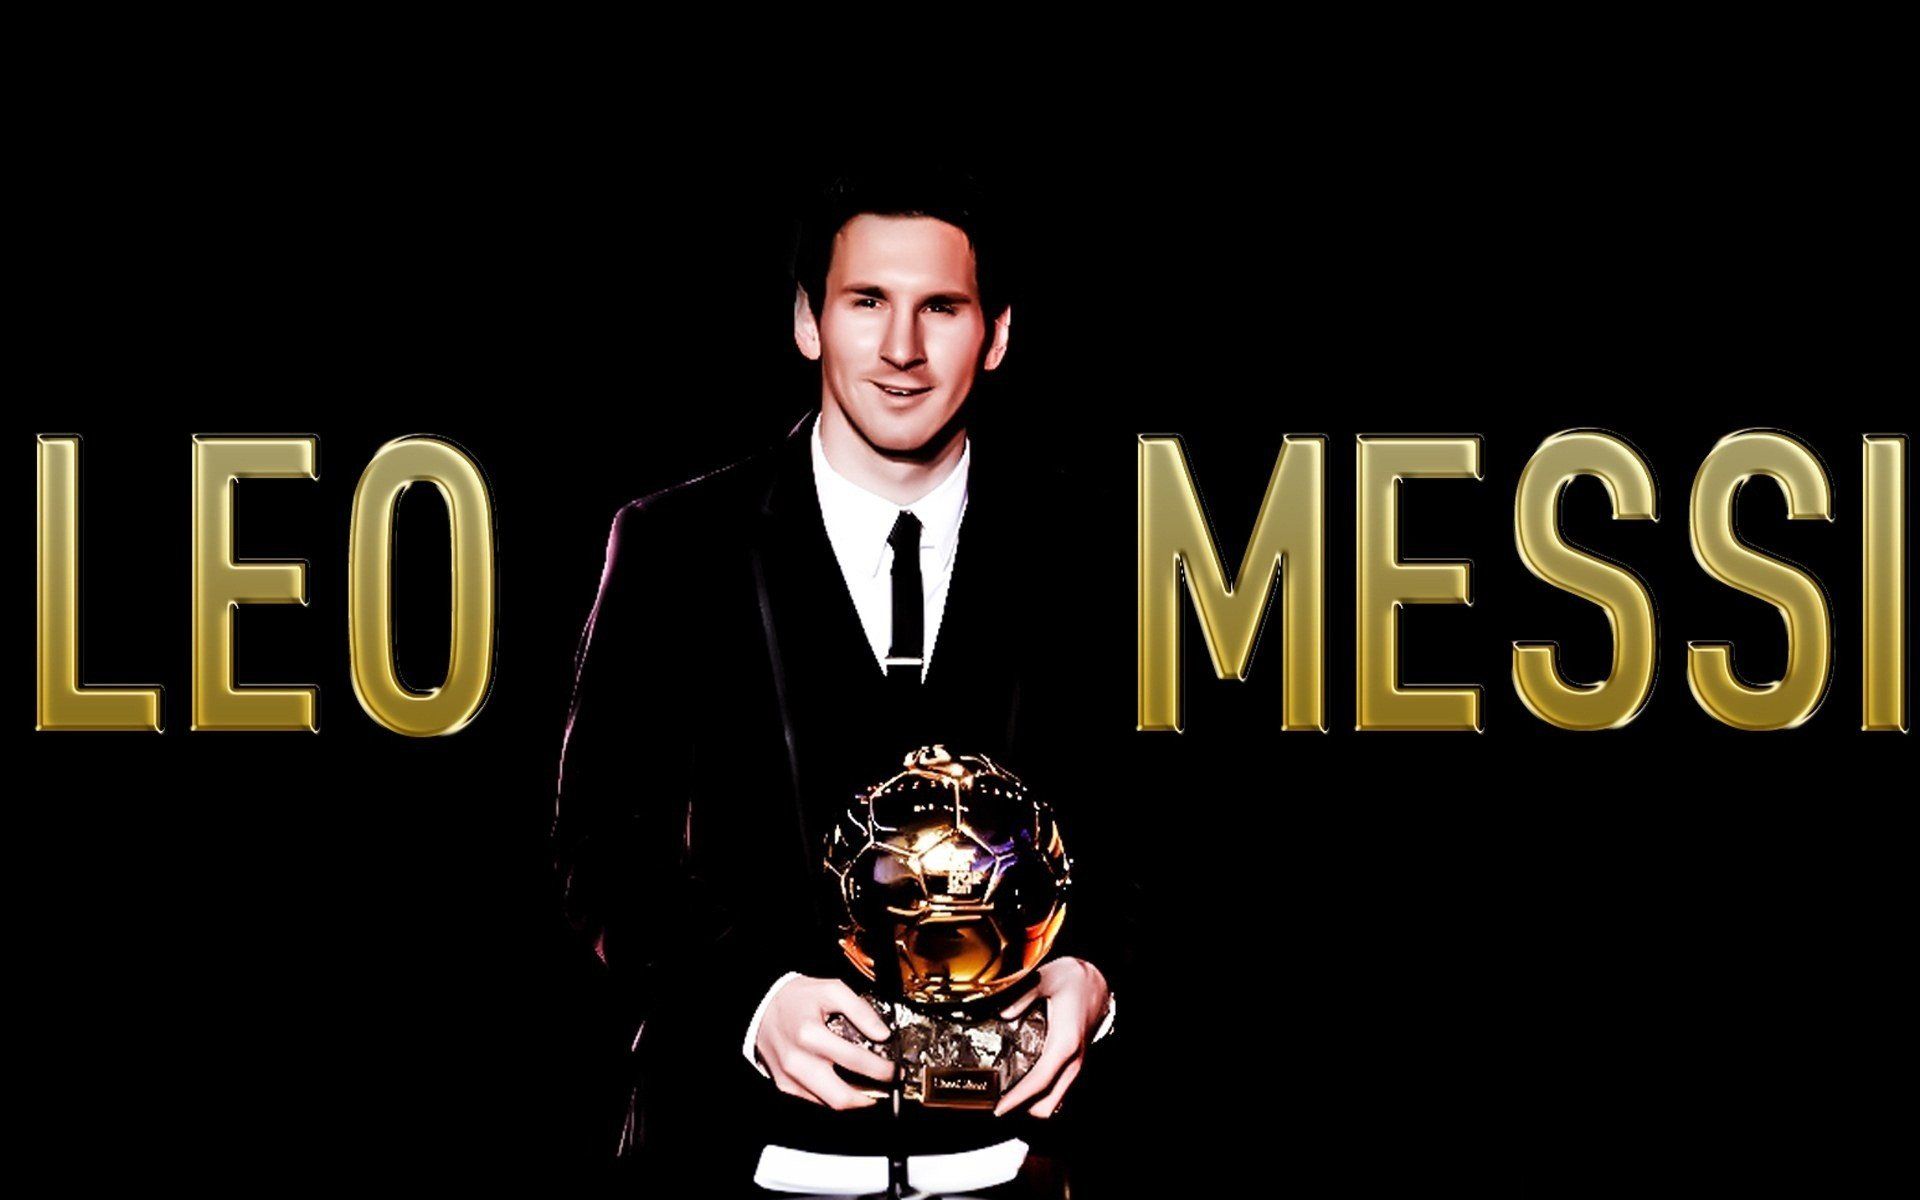 Soccer celebrity Lionel Messi black background wallpaper